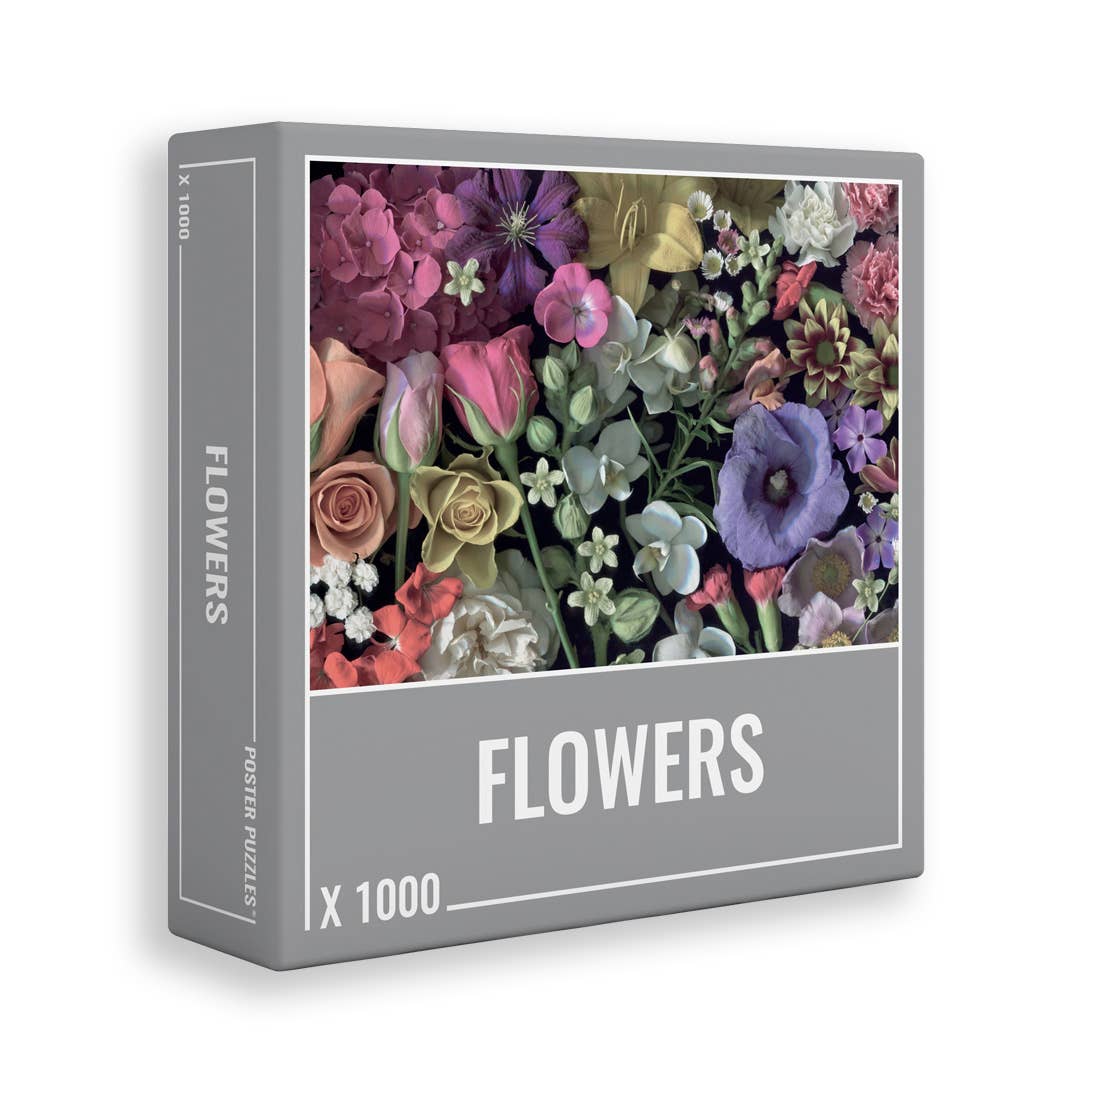 Flowers | 1,000 Piece Jigsaw Puzzle